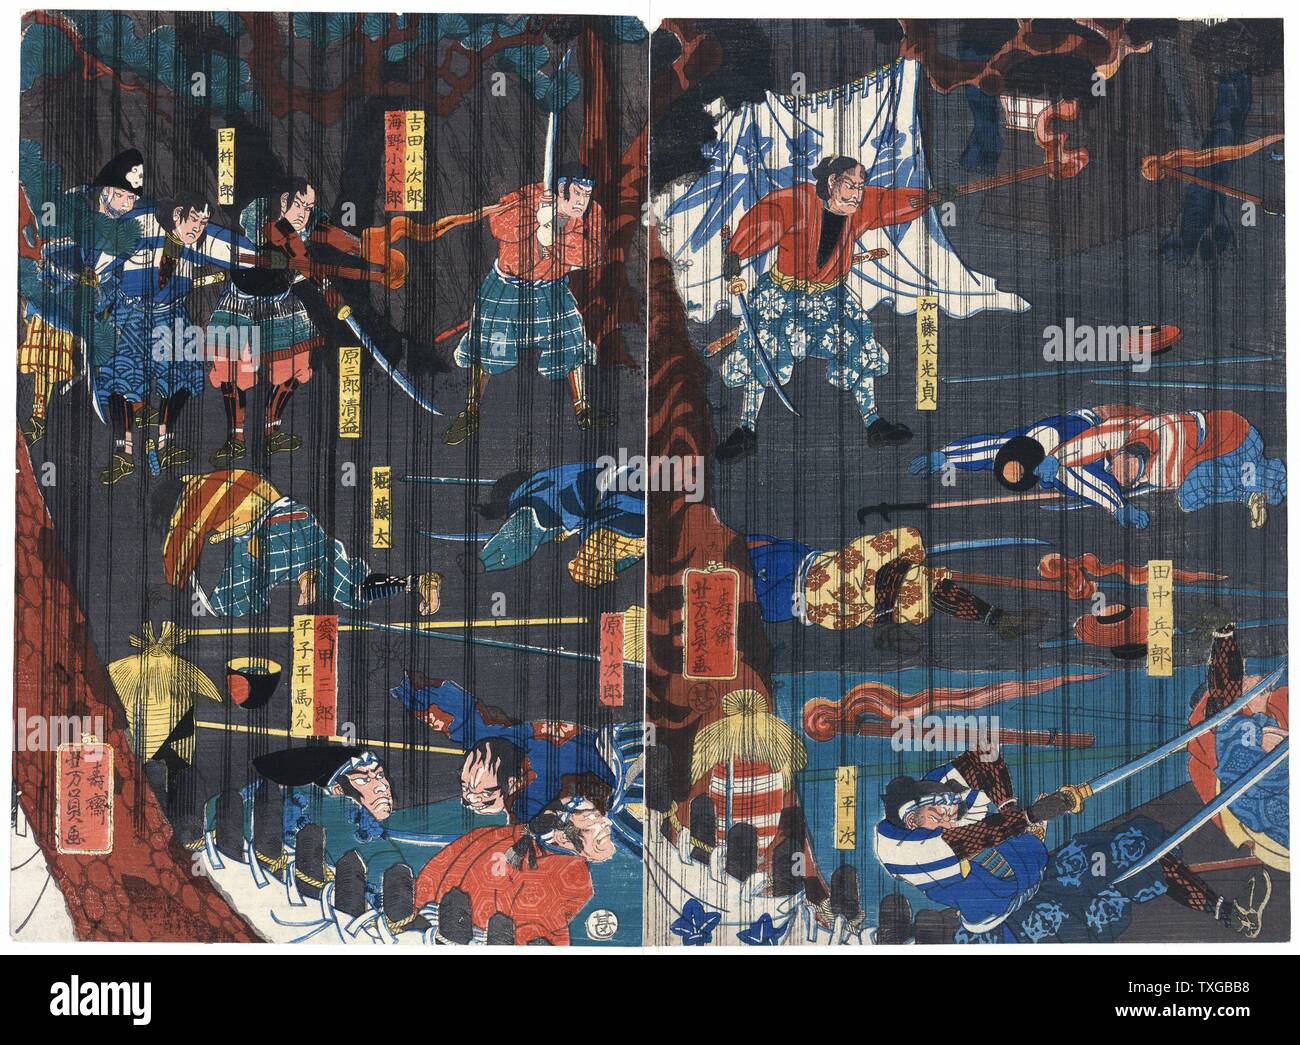 Scena da una Soga giocare. Stampa mostra attori raffigurante due Soga fratelli e altri guerrieri in una Soga kabuki play. Foto Stock